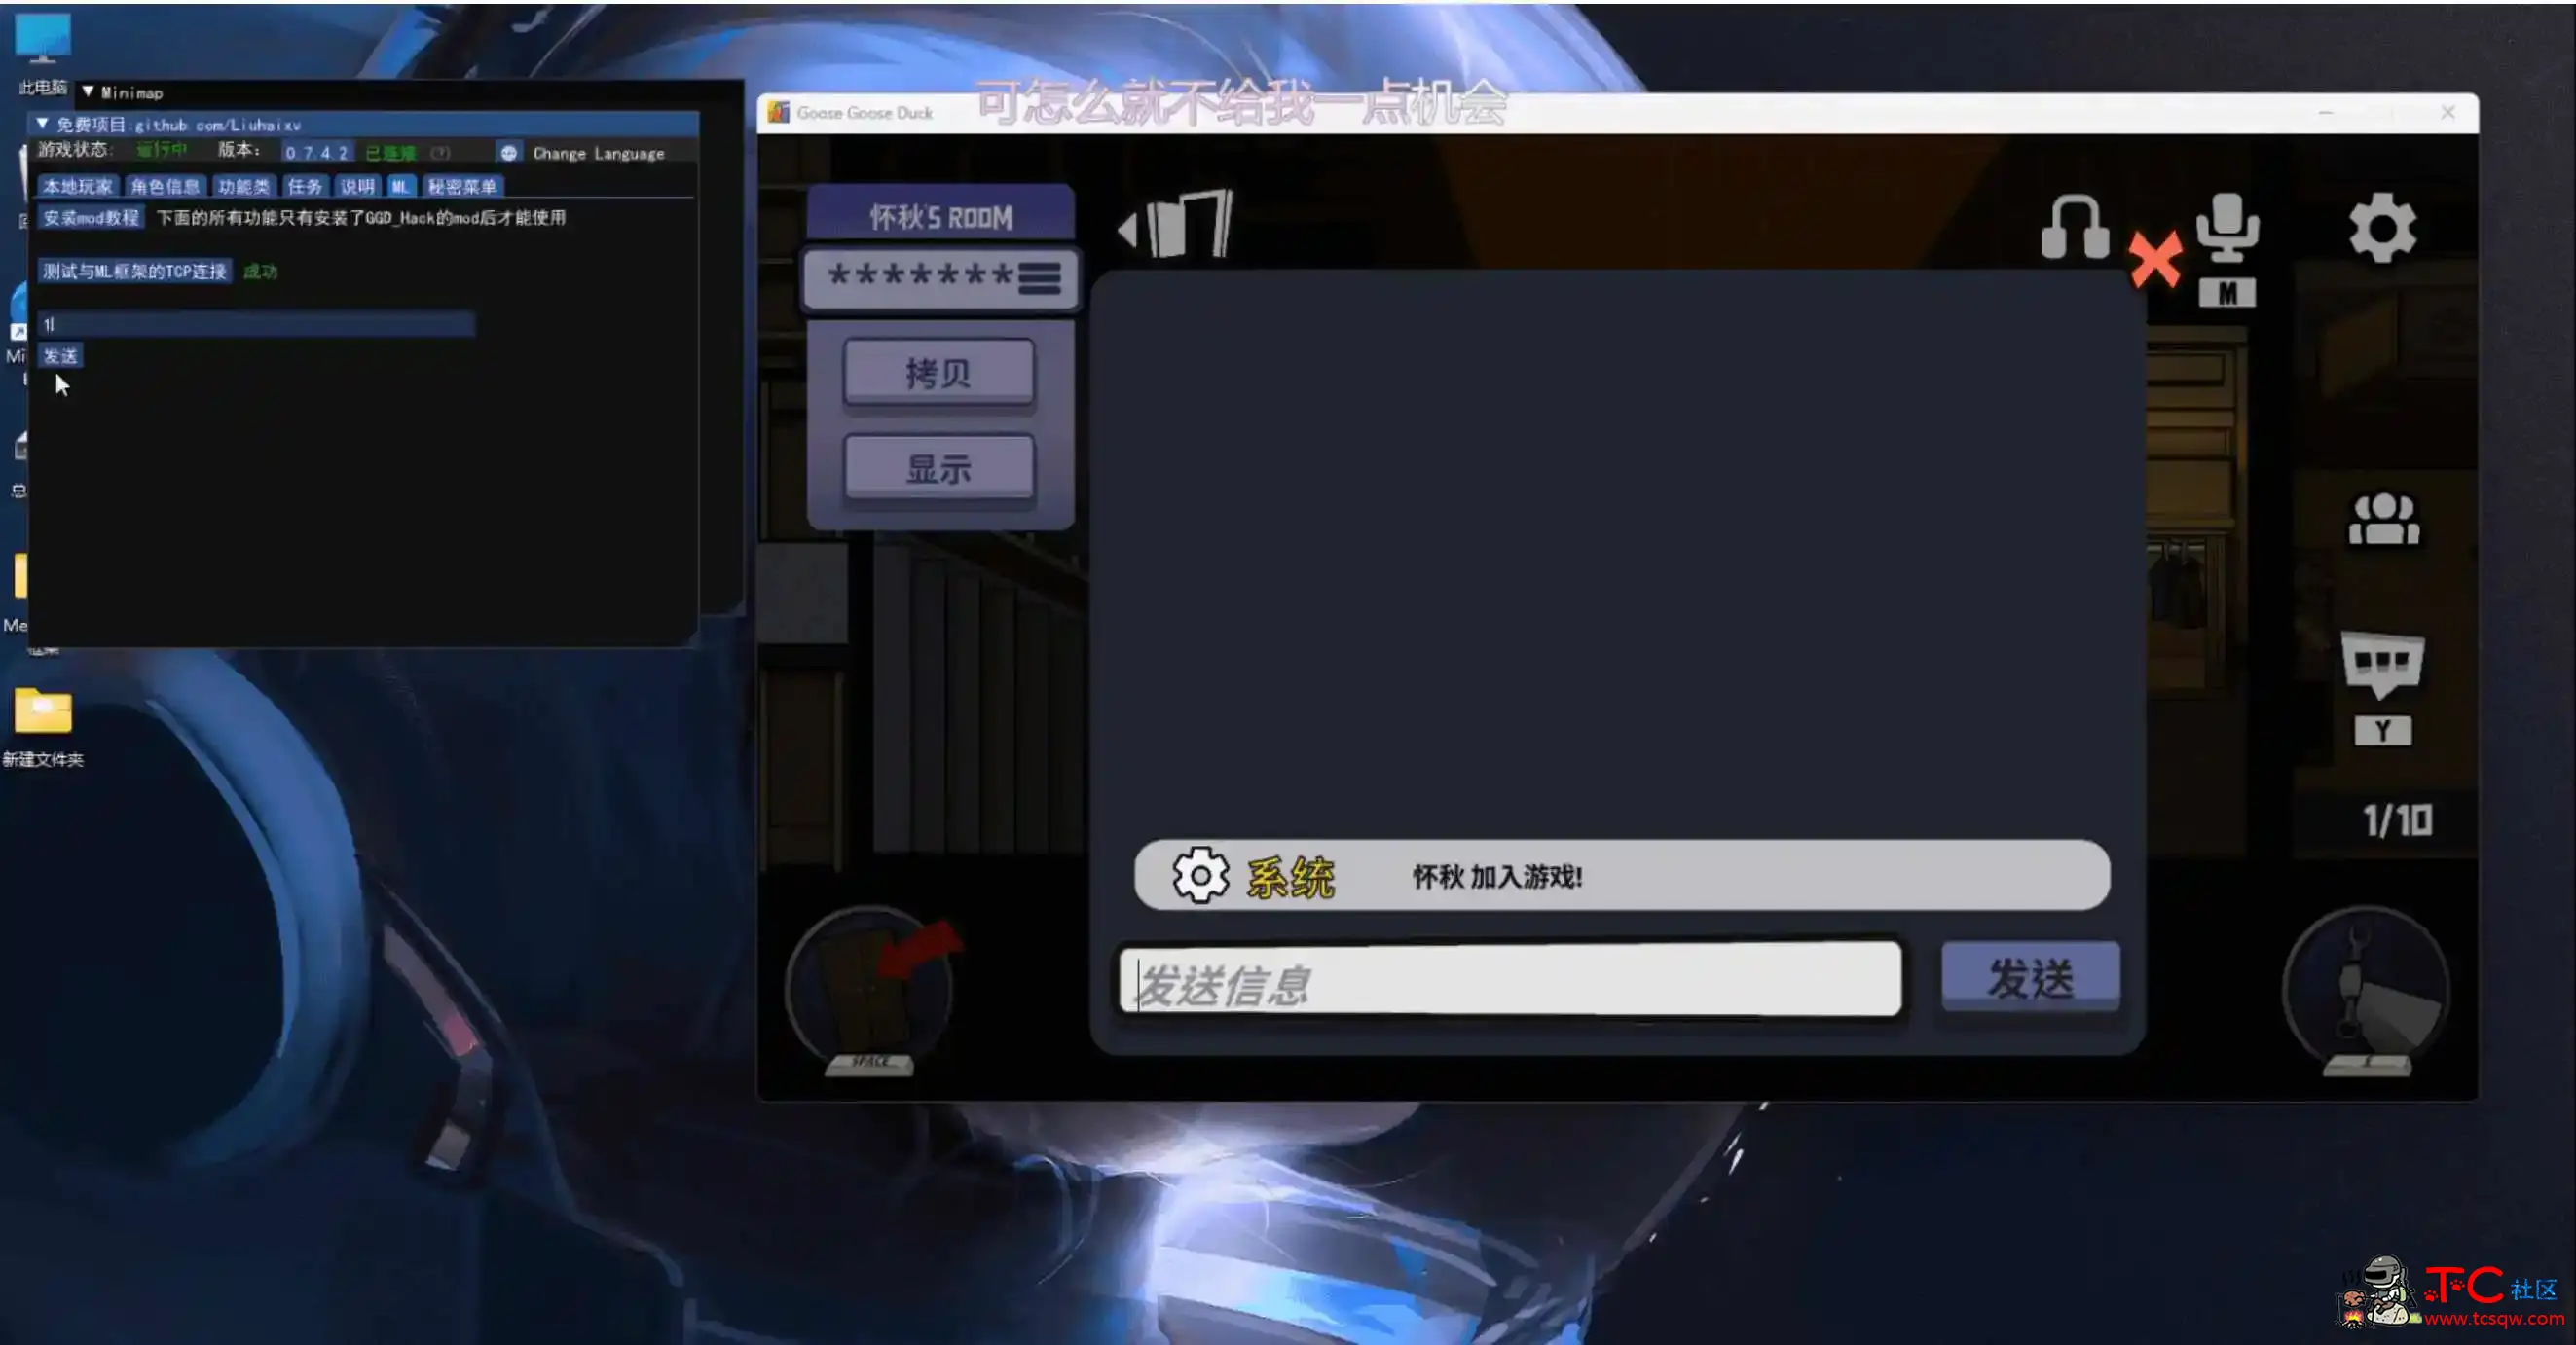 鹅鸭杀Minimp显玩家传送无冷却穿墙多功能辅助v1.5.1 屠城辅助网www.tcfz1.com754